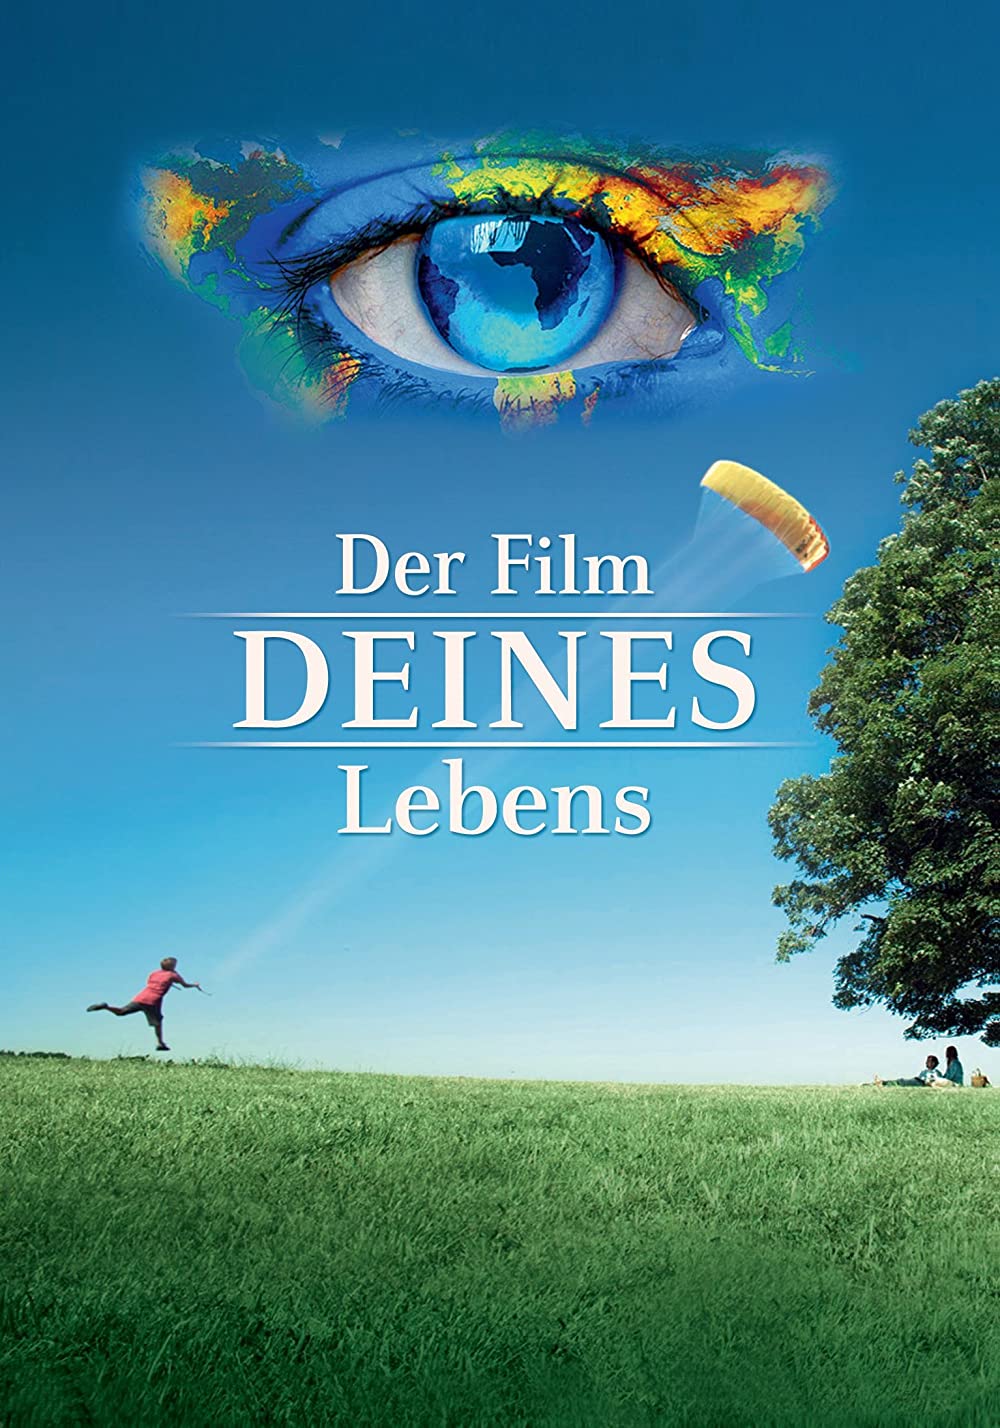 Filmbeschreibung zu Der Film DEINES Lebens!